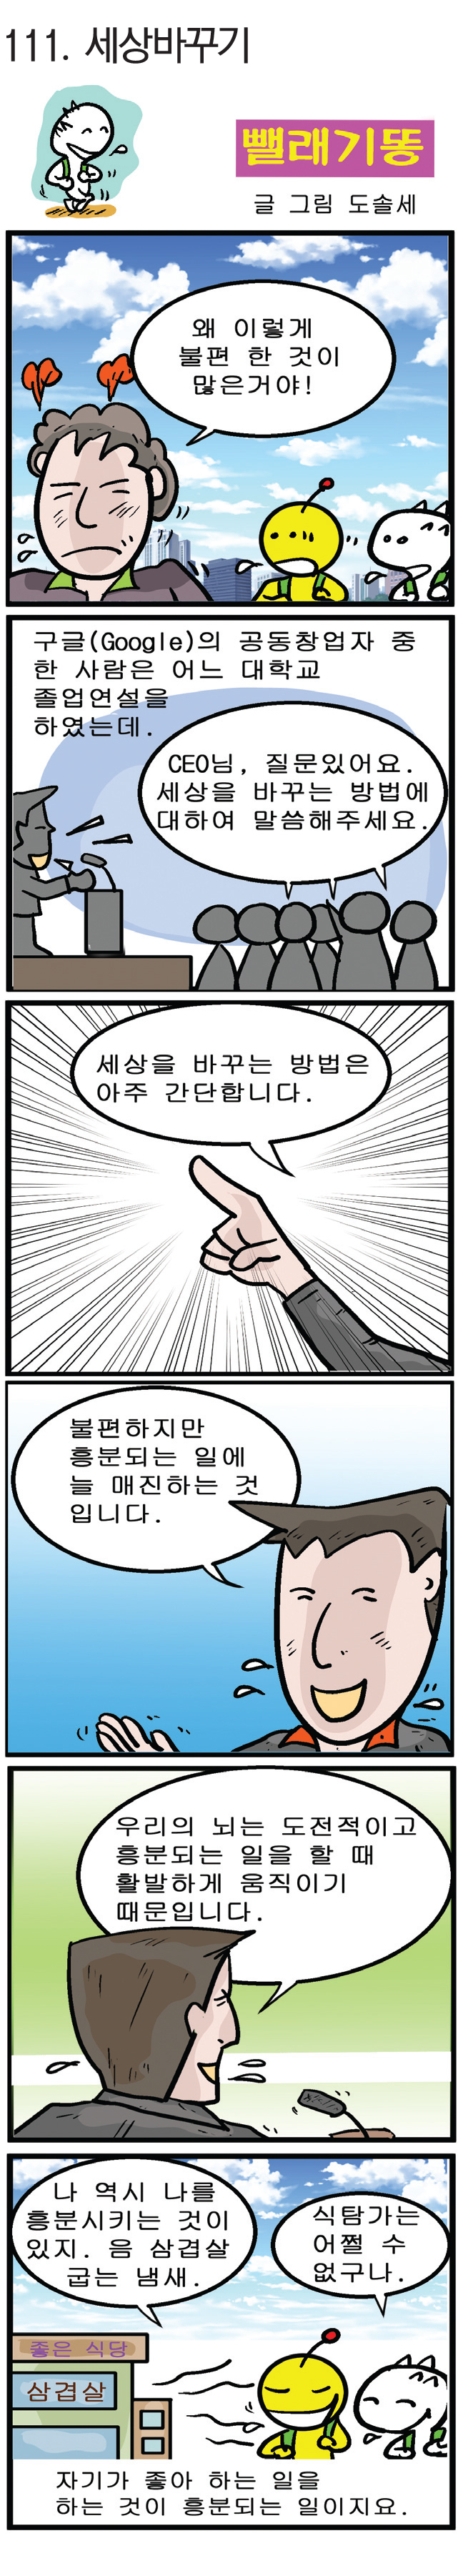 경북일보